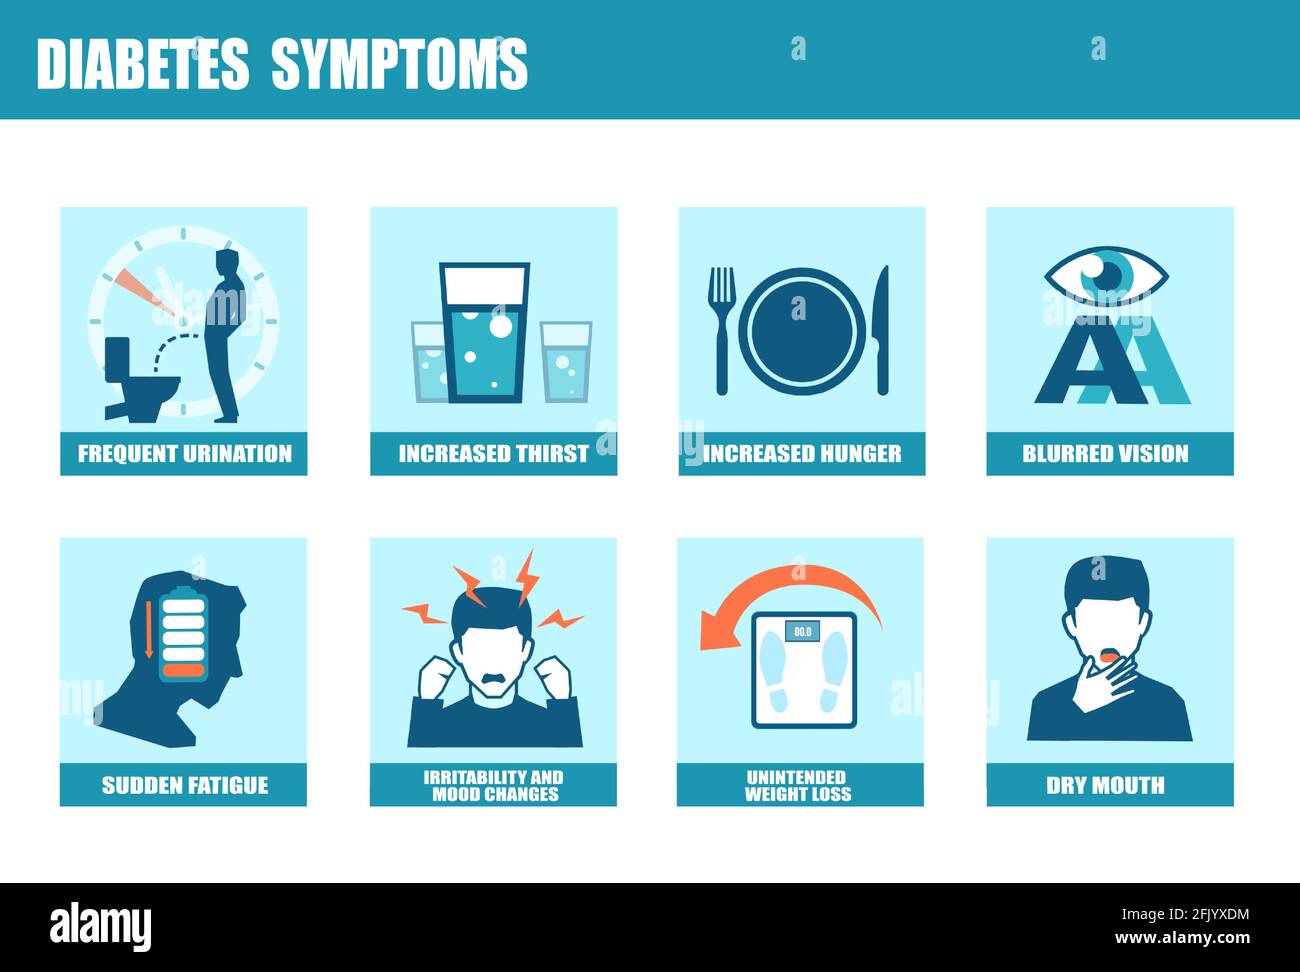 Vektor-Infografik über die Symptome und Zeichen von Diabetes bei einem Patienten Mit DM Typ 1 oder Typ 2 Stock Vektor